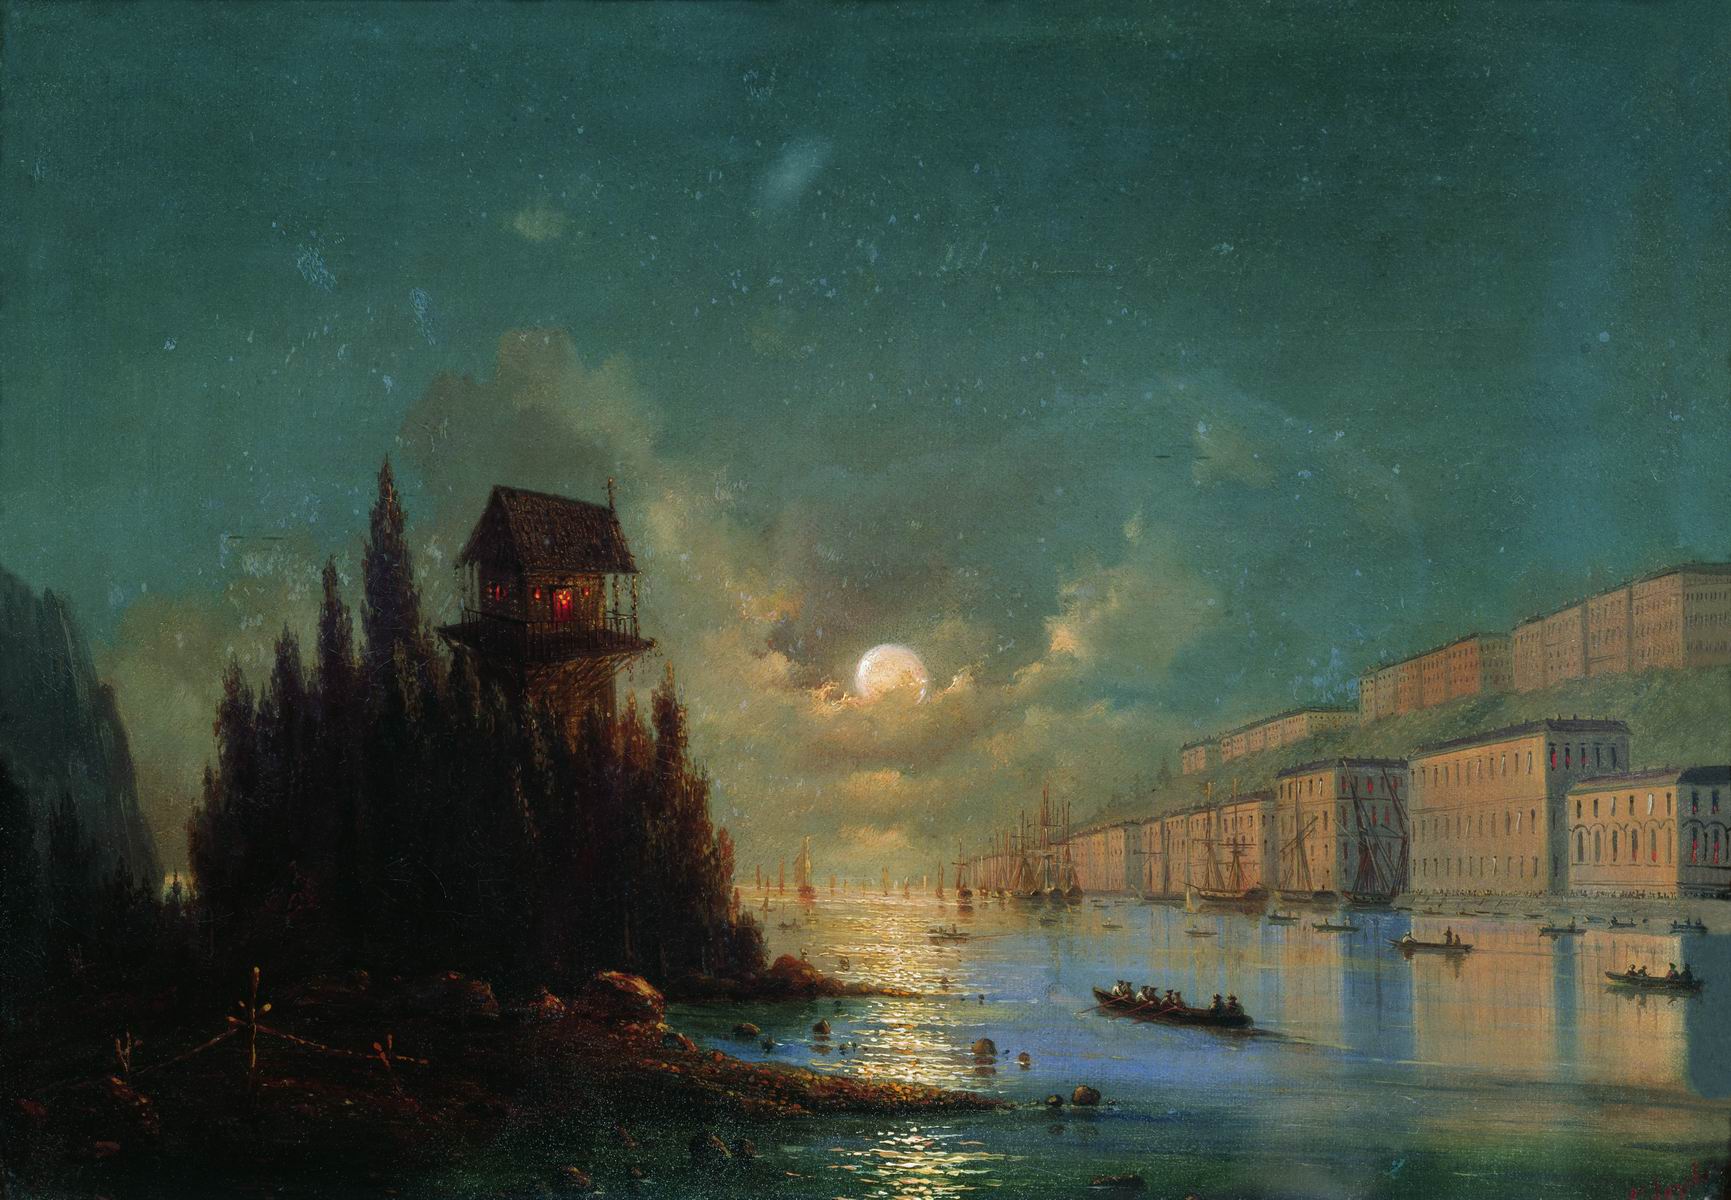 Айвазовский. Вид приморского города вечером с зажженным маяком. 1870-е